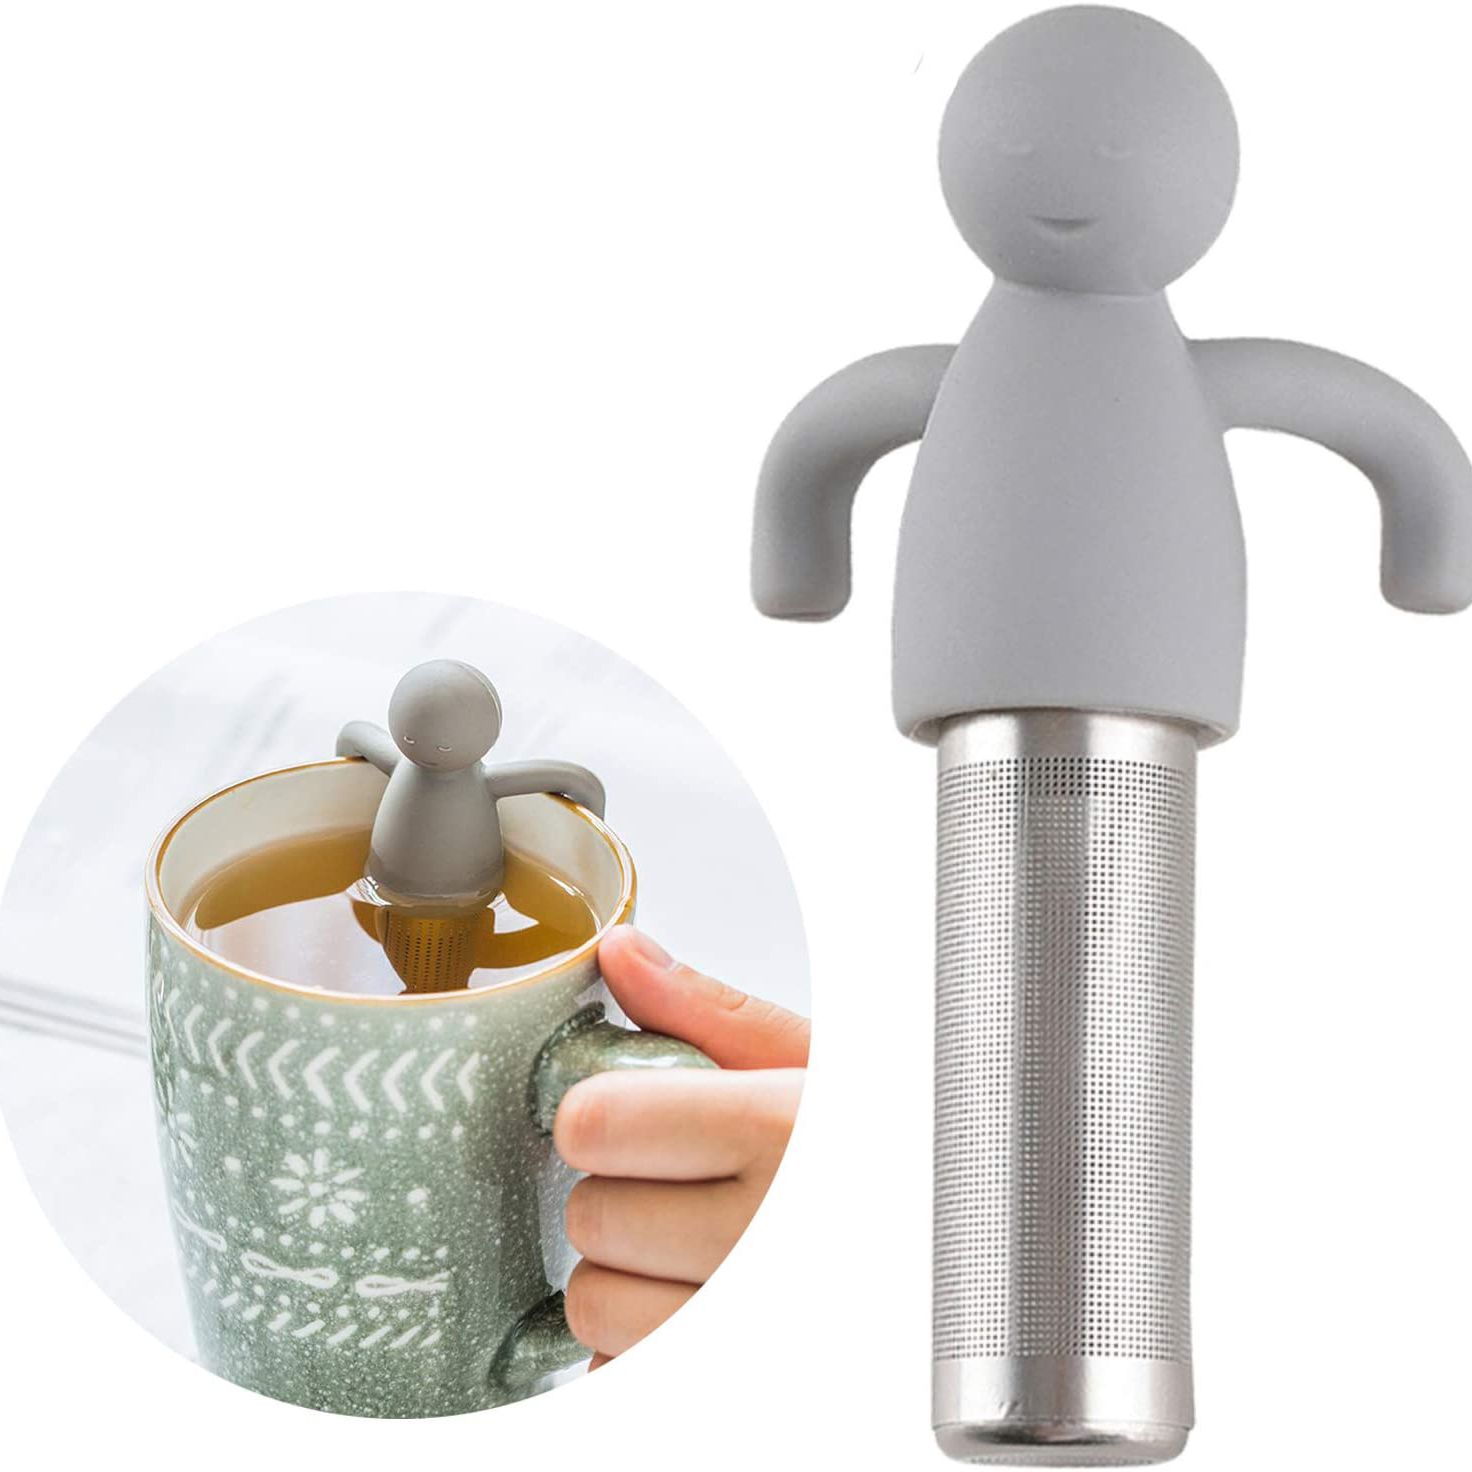 创意小人泡茶器 新奇特礼品硅胶不锈钢泡茶器